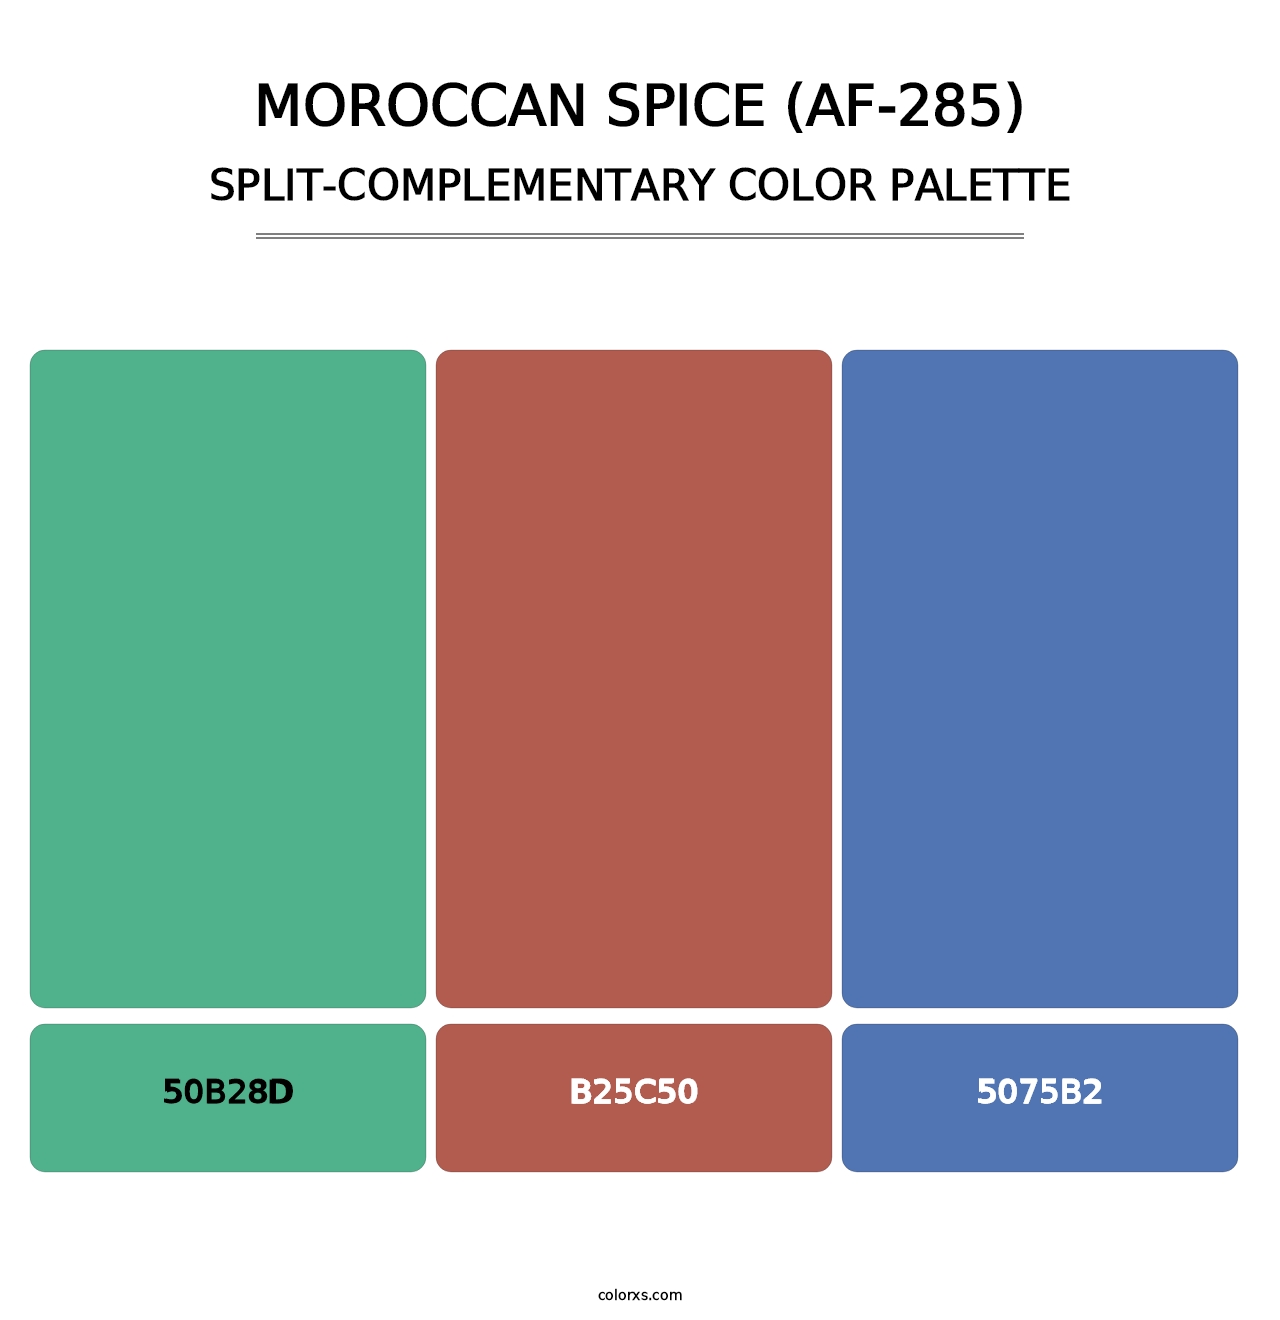 Moroccan Spice (AF-285) - Split-Complementary Color Palette